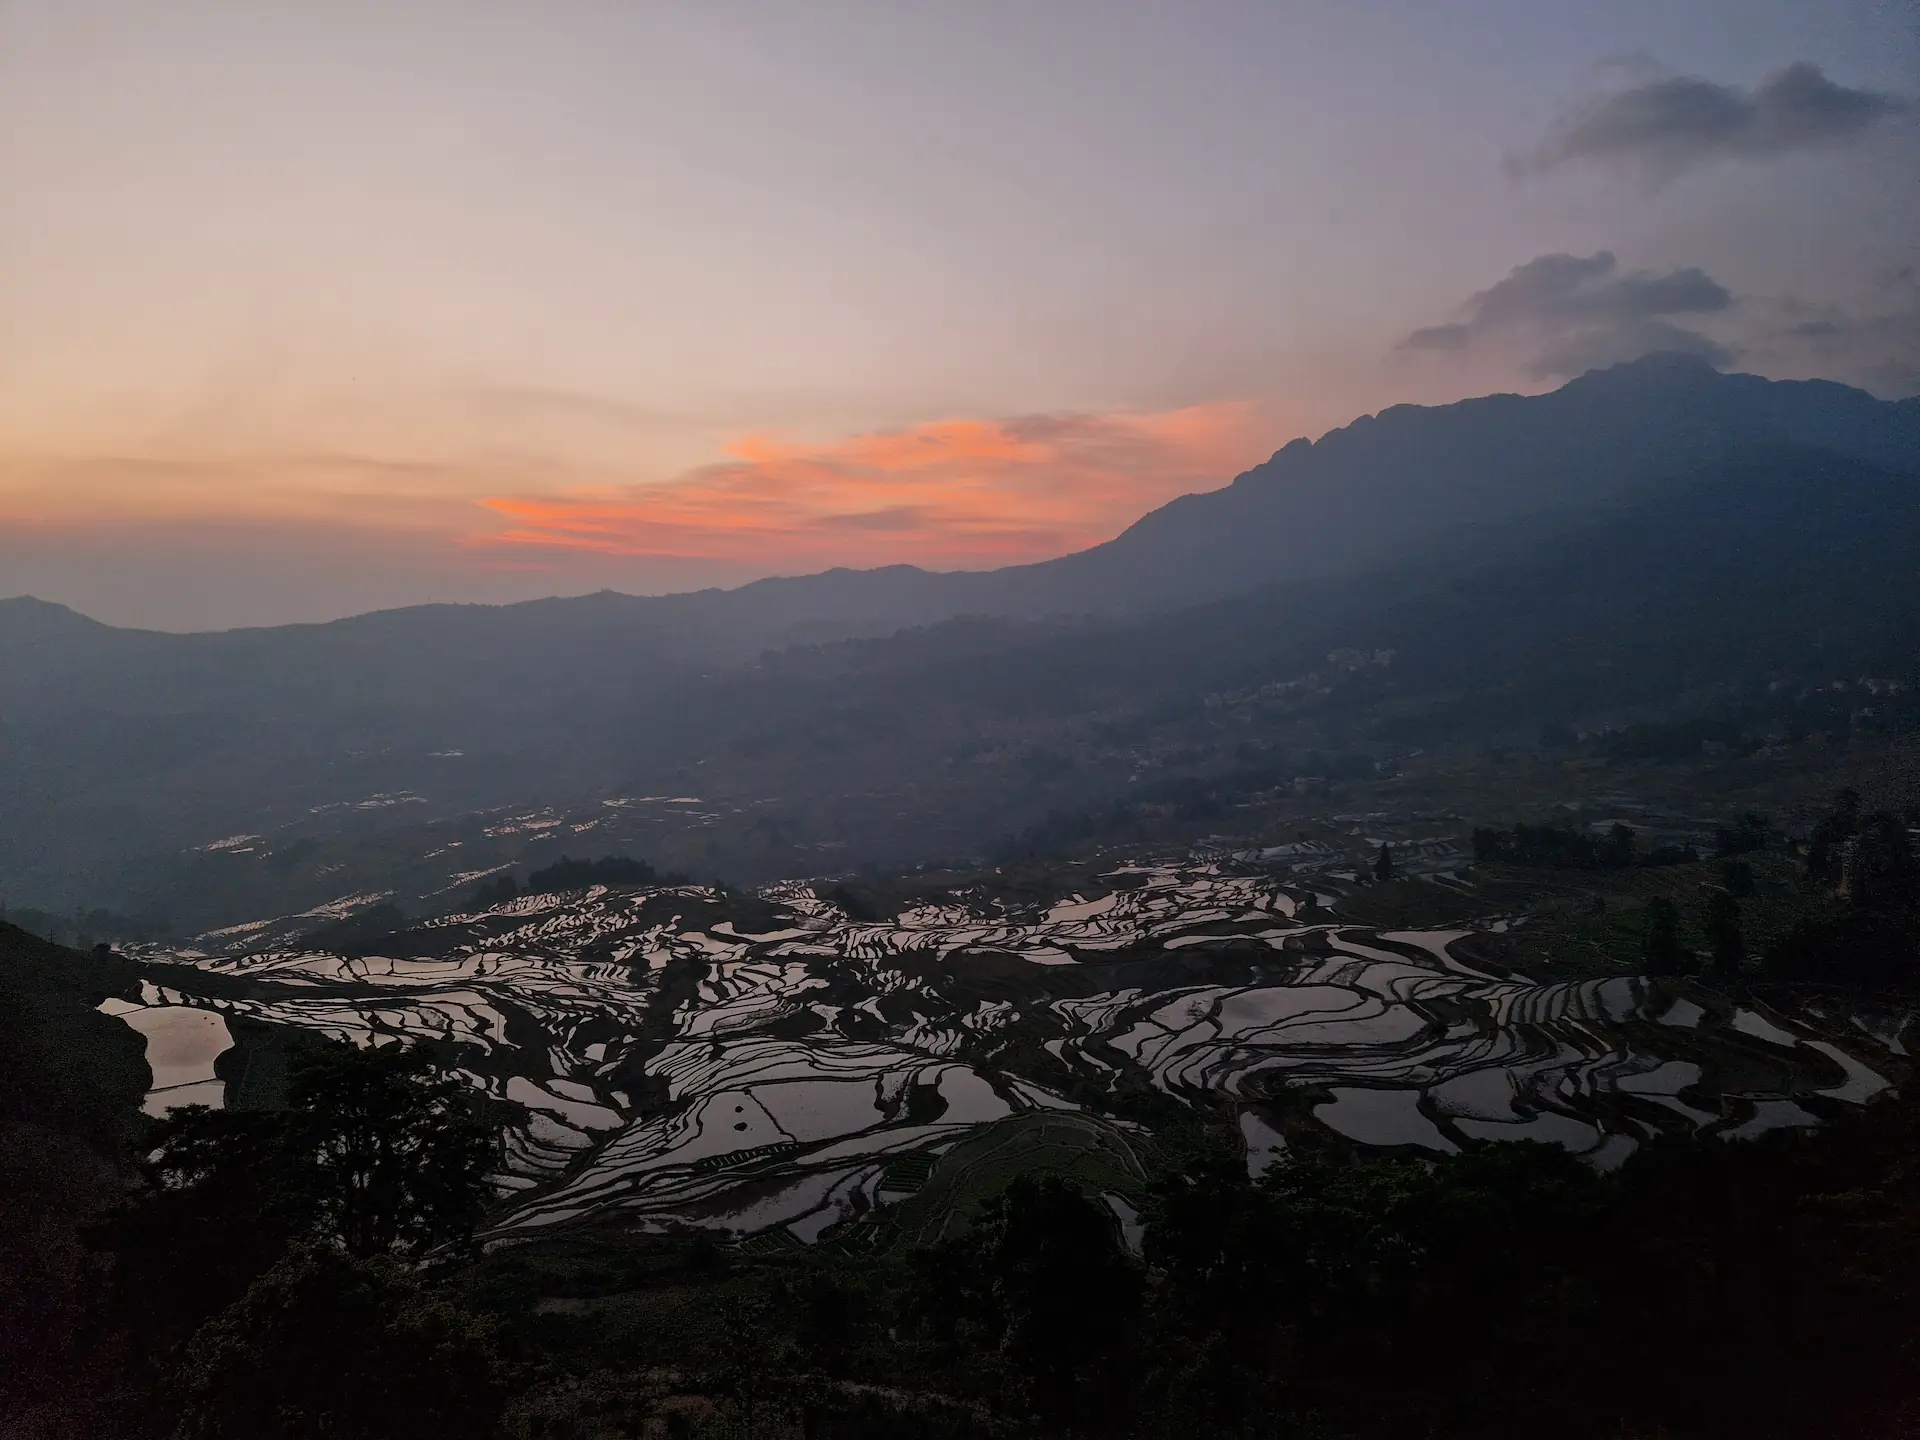 Le soleil va bientôt se lever sur les rizières de Duoyishu. Le ciel est encore endormi, les nuages sont roses-orangés. Les bassins à quelques centaines de mètres plus bas sont comme des miroirs sombres,